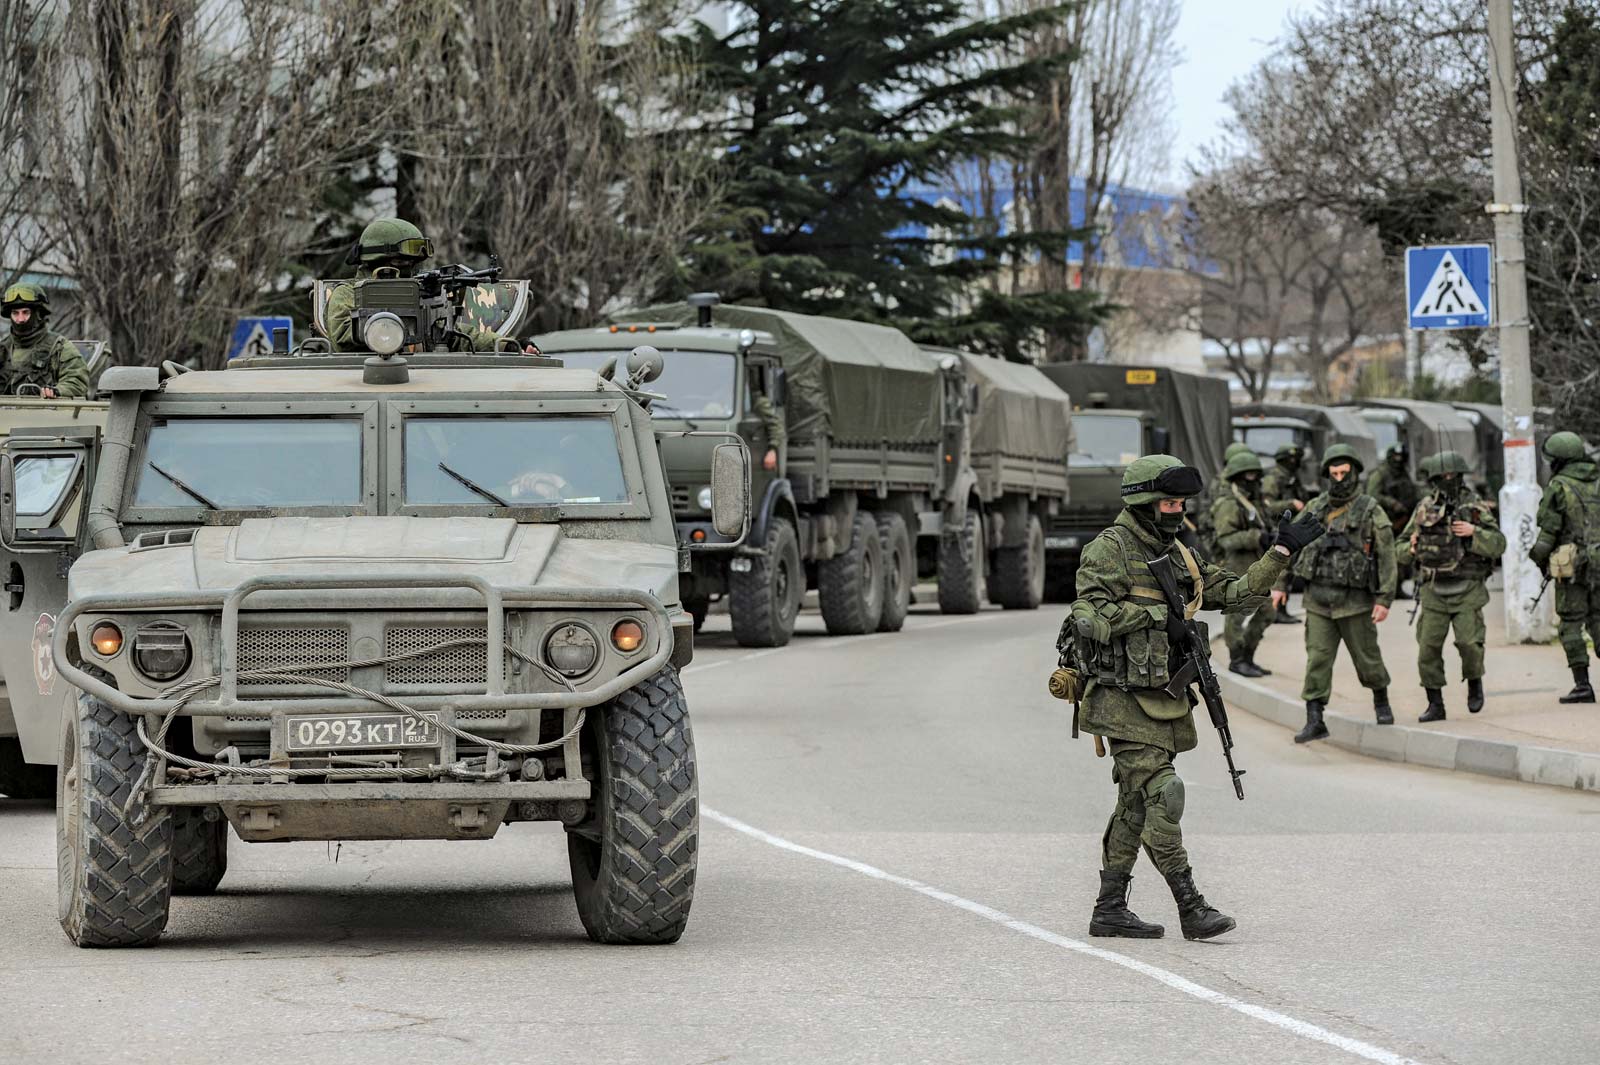 Ουκρανική κρίση: Τα 7 σημάδια που δείχνουν ότι ένας καταστροφικός πόλεμος Δύσης – Ρωσίας είναι πλέον πολύ κοντά